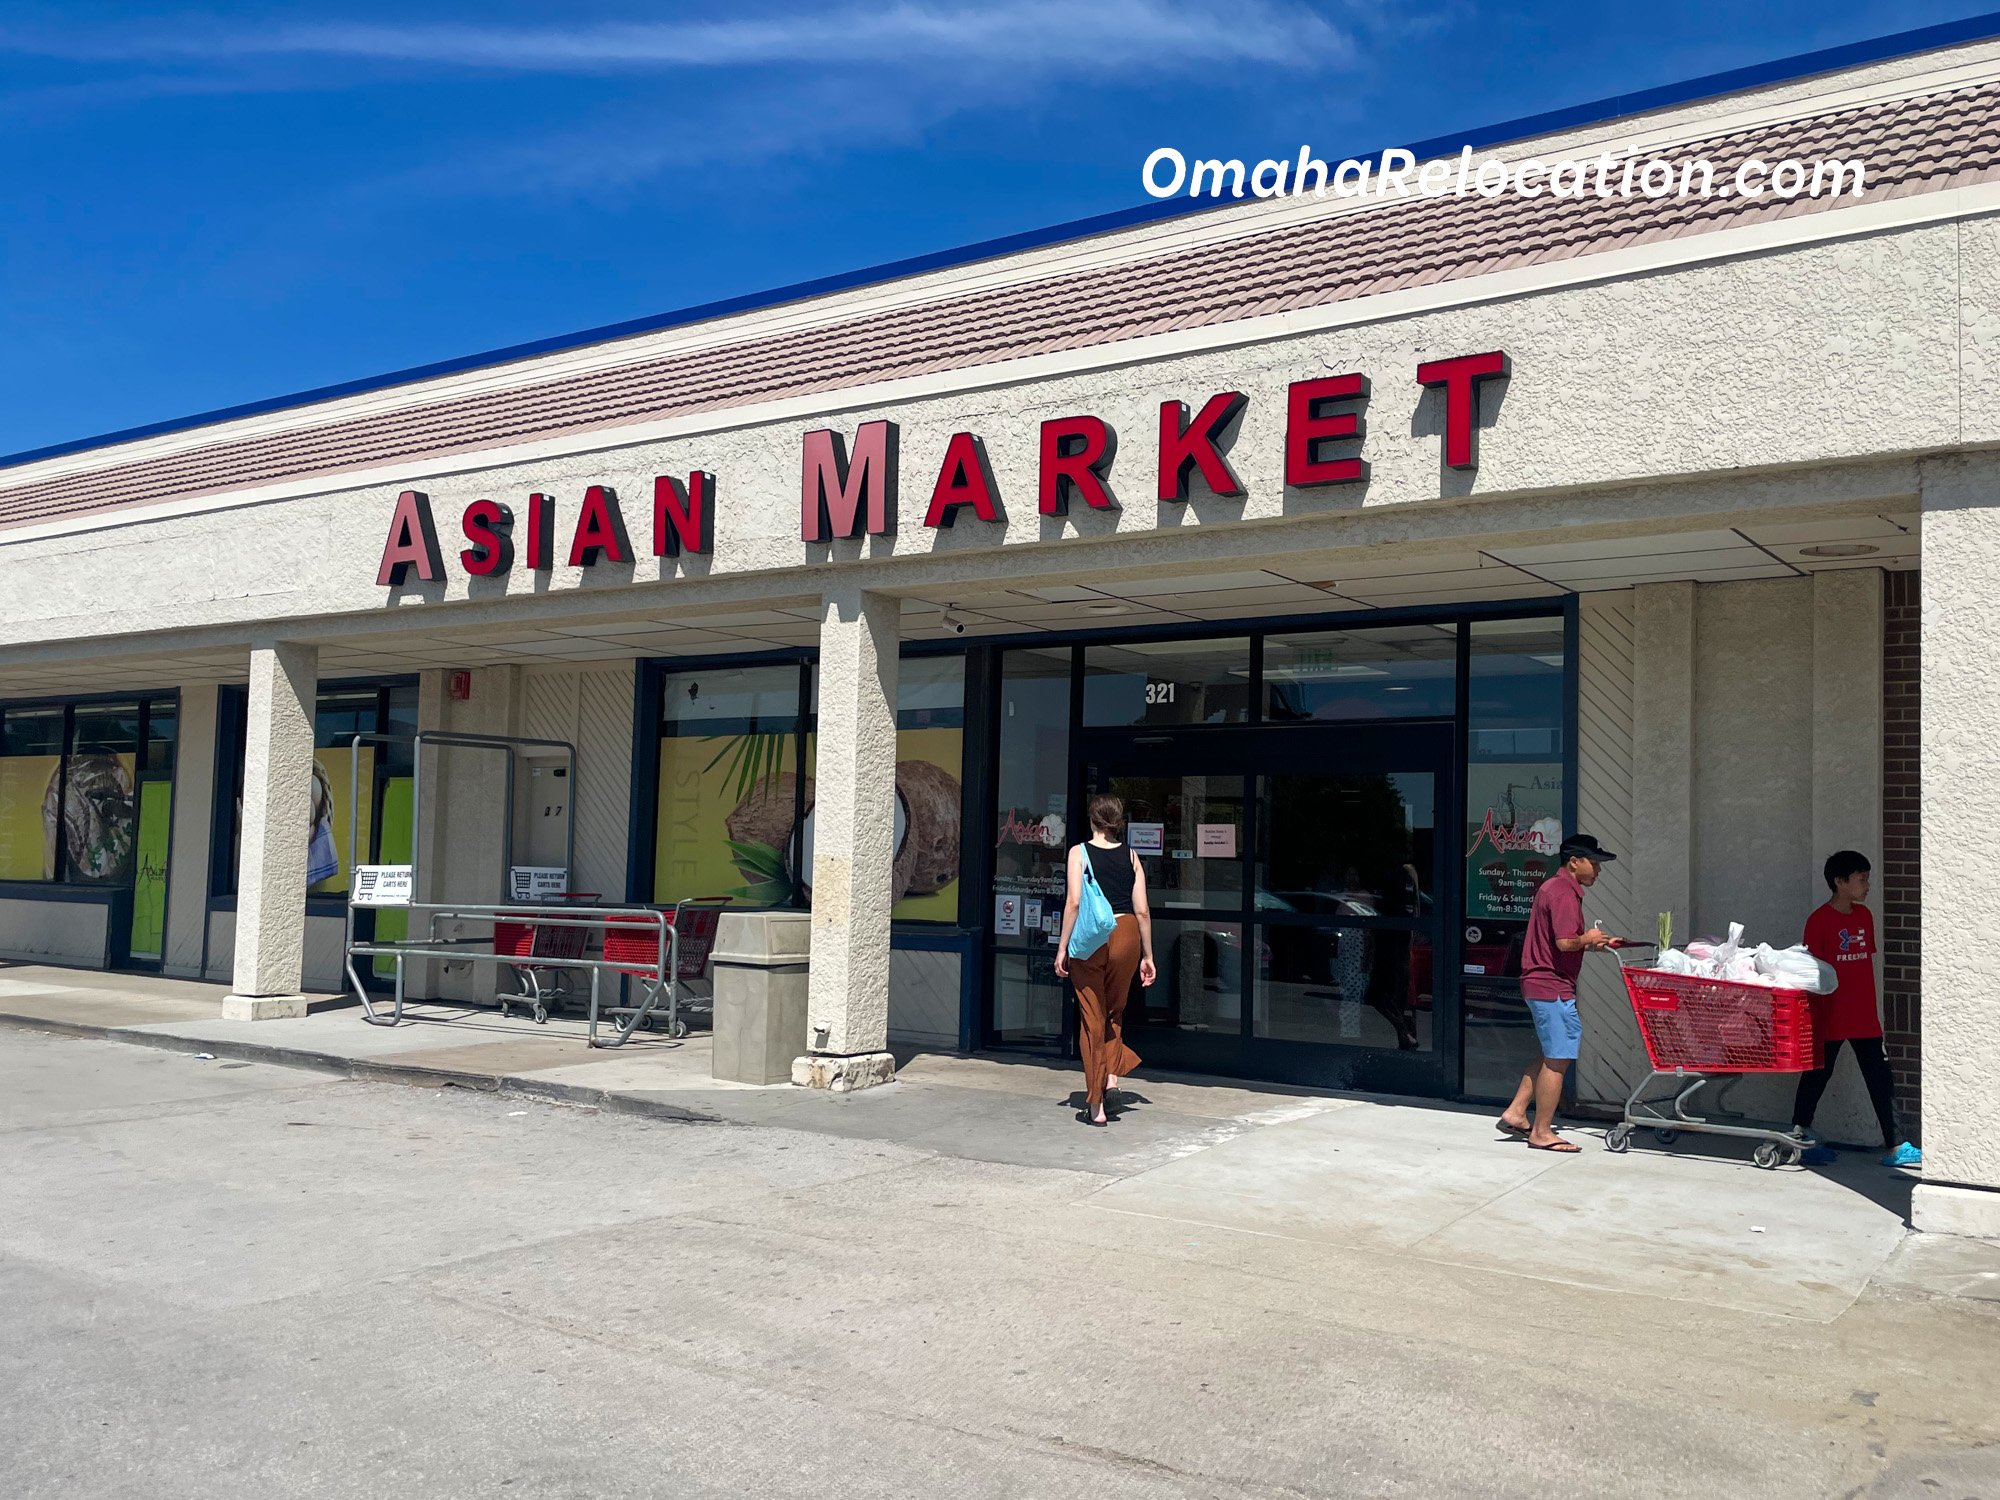 Asian Market in Omaha, Nebraska